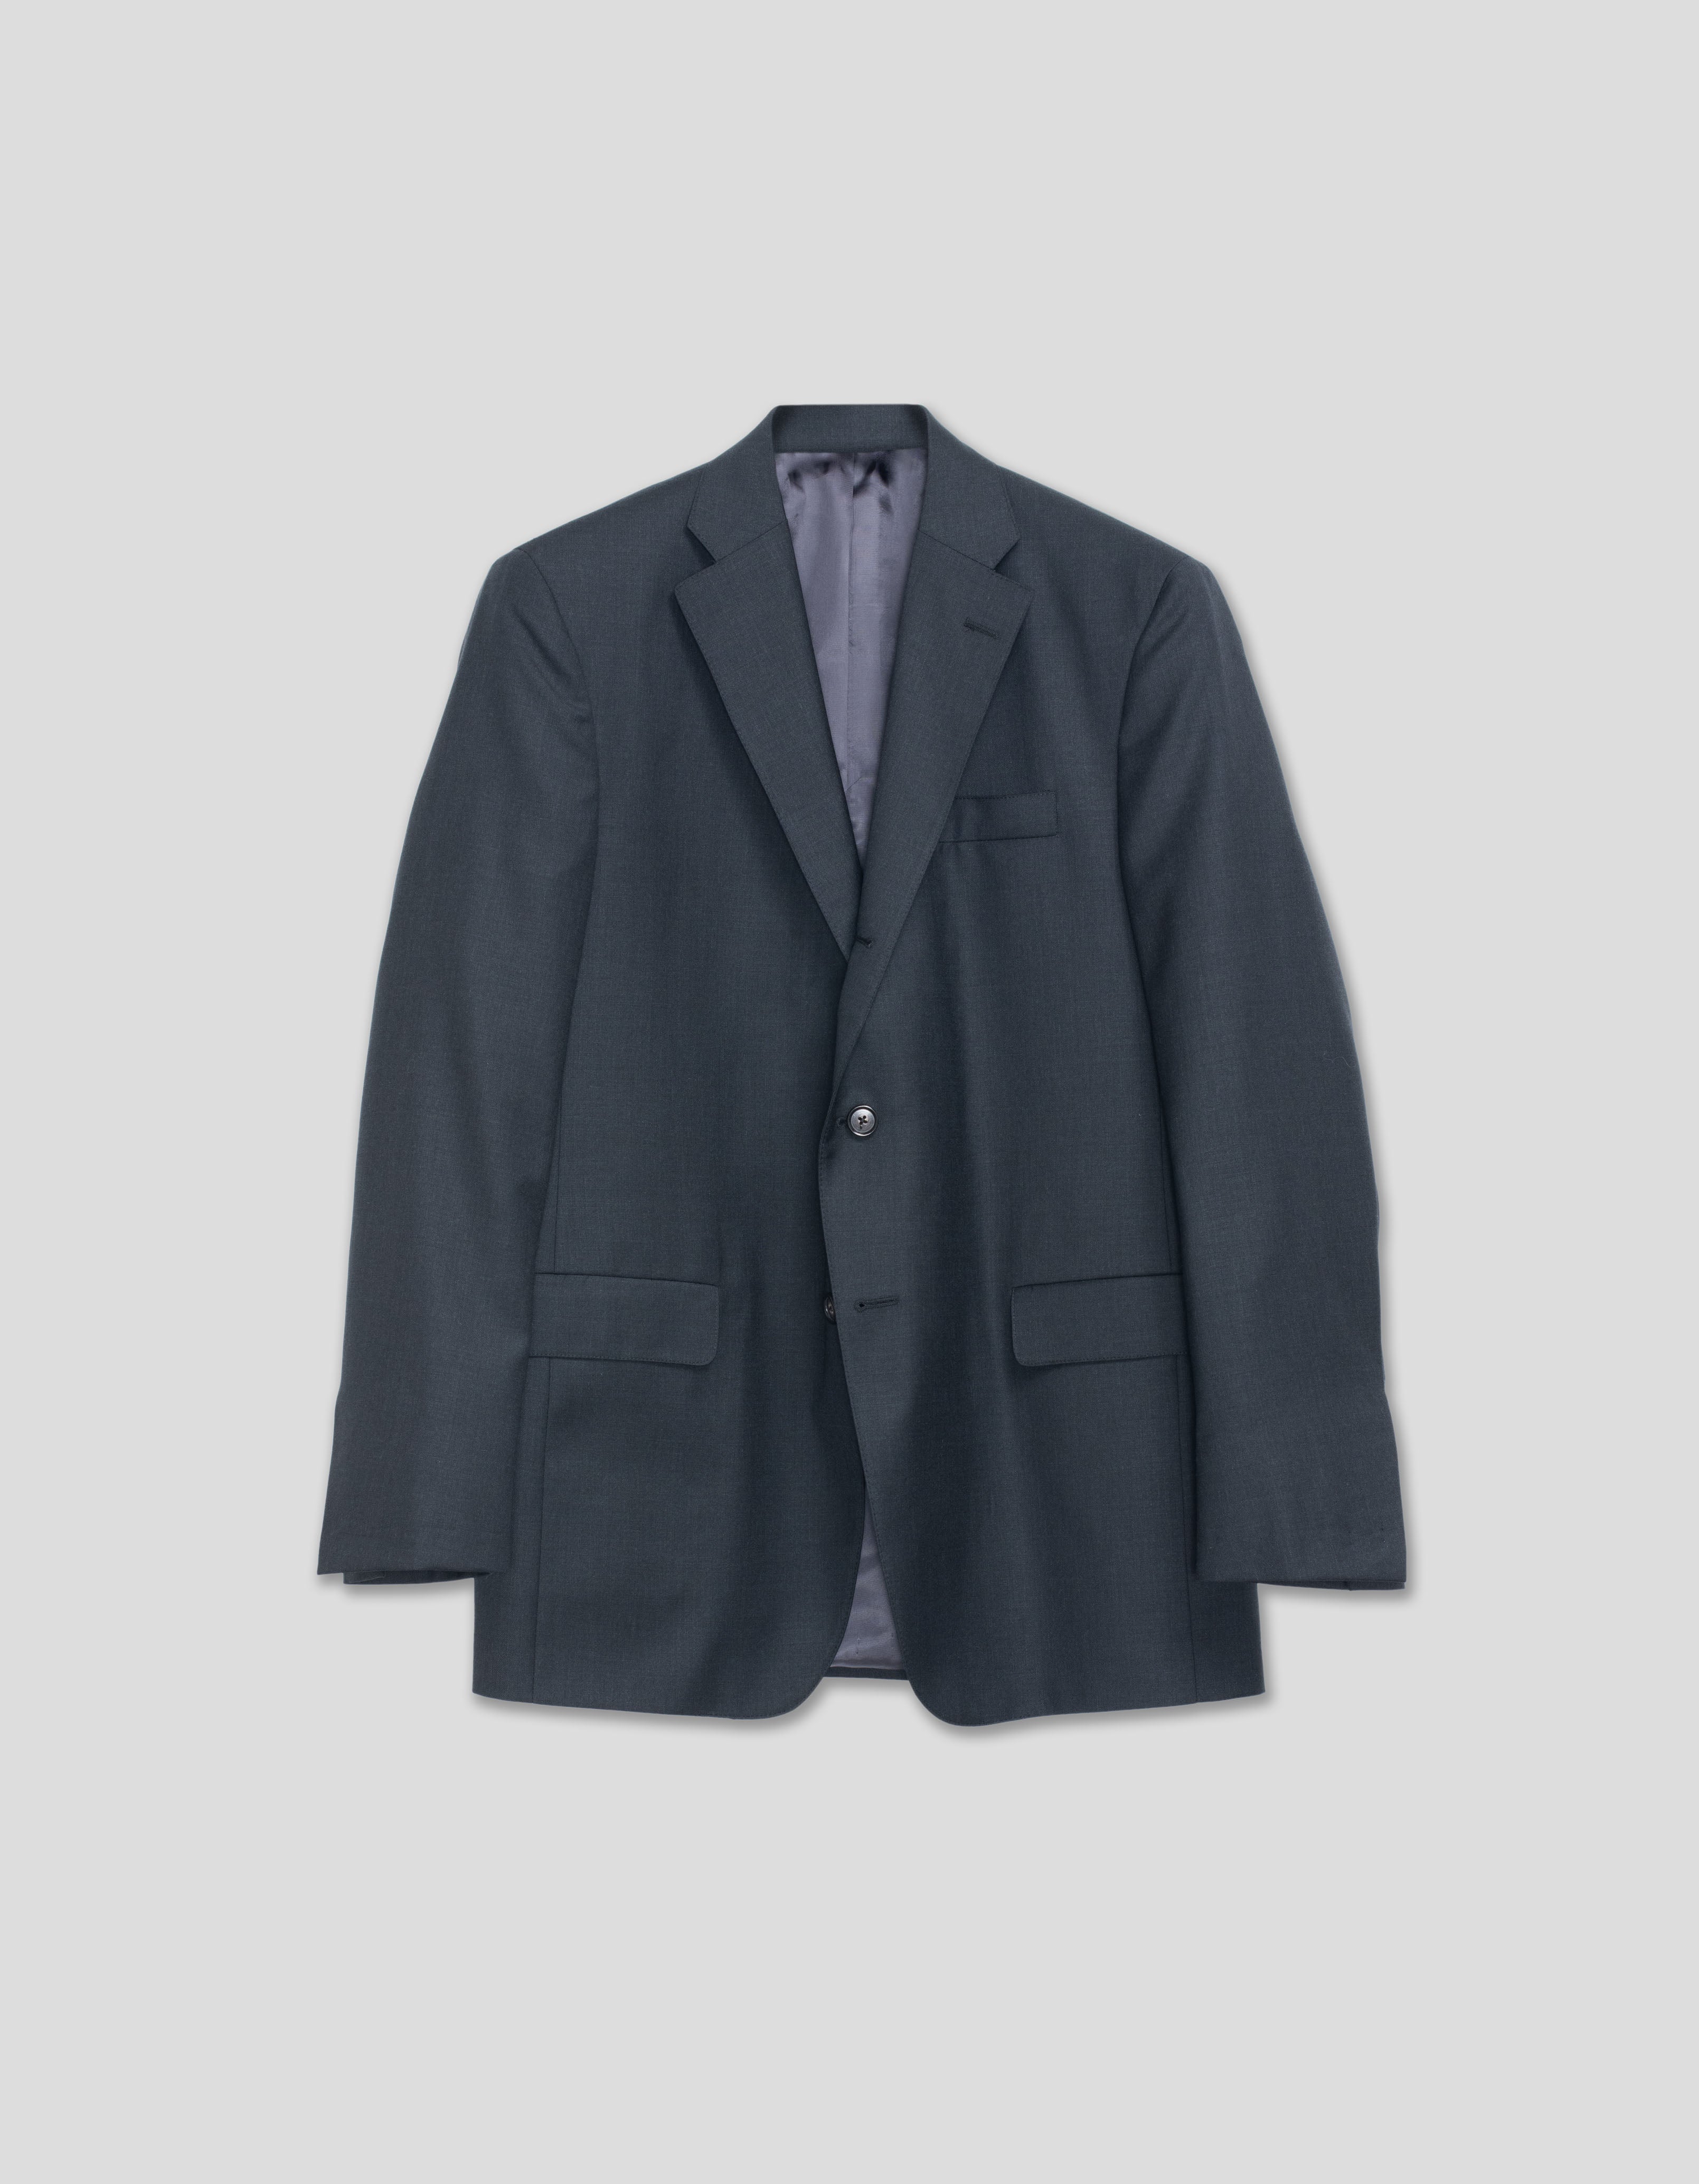 Grey Solid Suit - Classic Fit | Men's Suits & Dress Clothes - J. Press